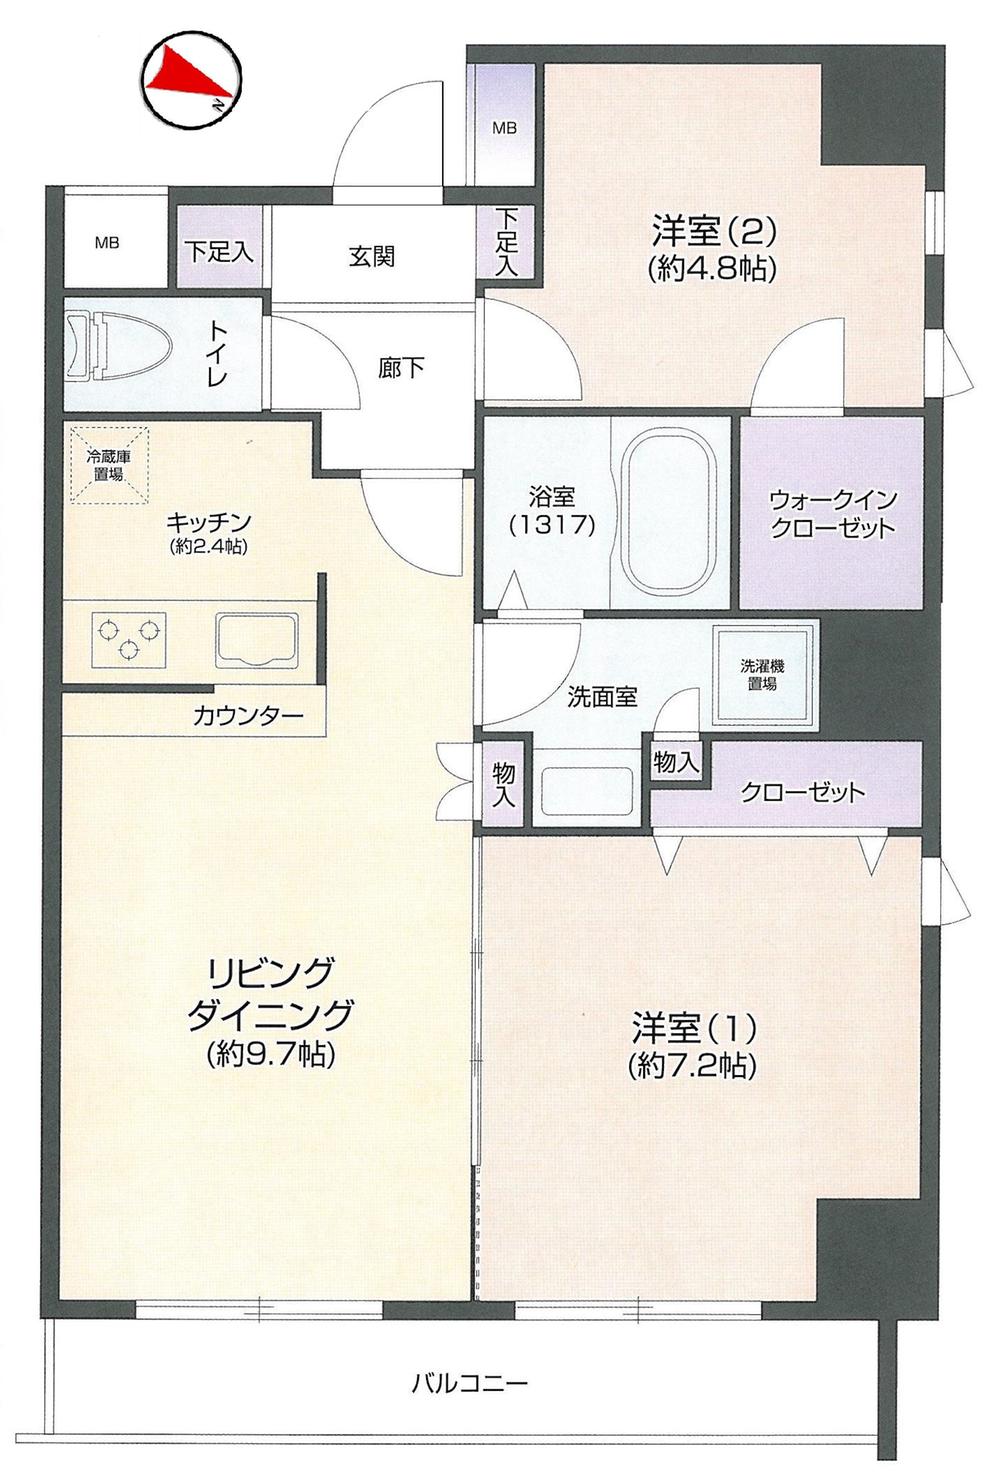 Floor plan. 2LDK, Price 47,800,000 yen, Footprint 55.4 sq m , Balcony area 6.08 sq m Floor